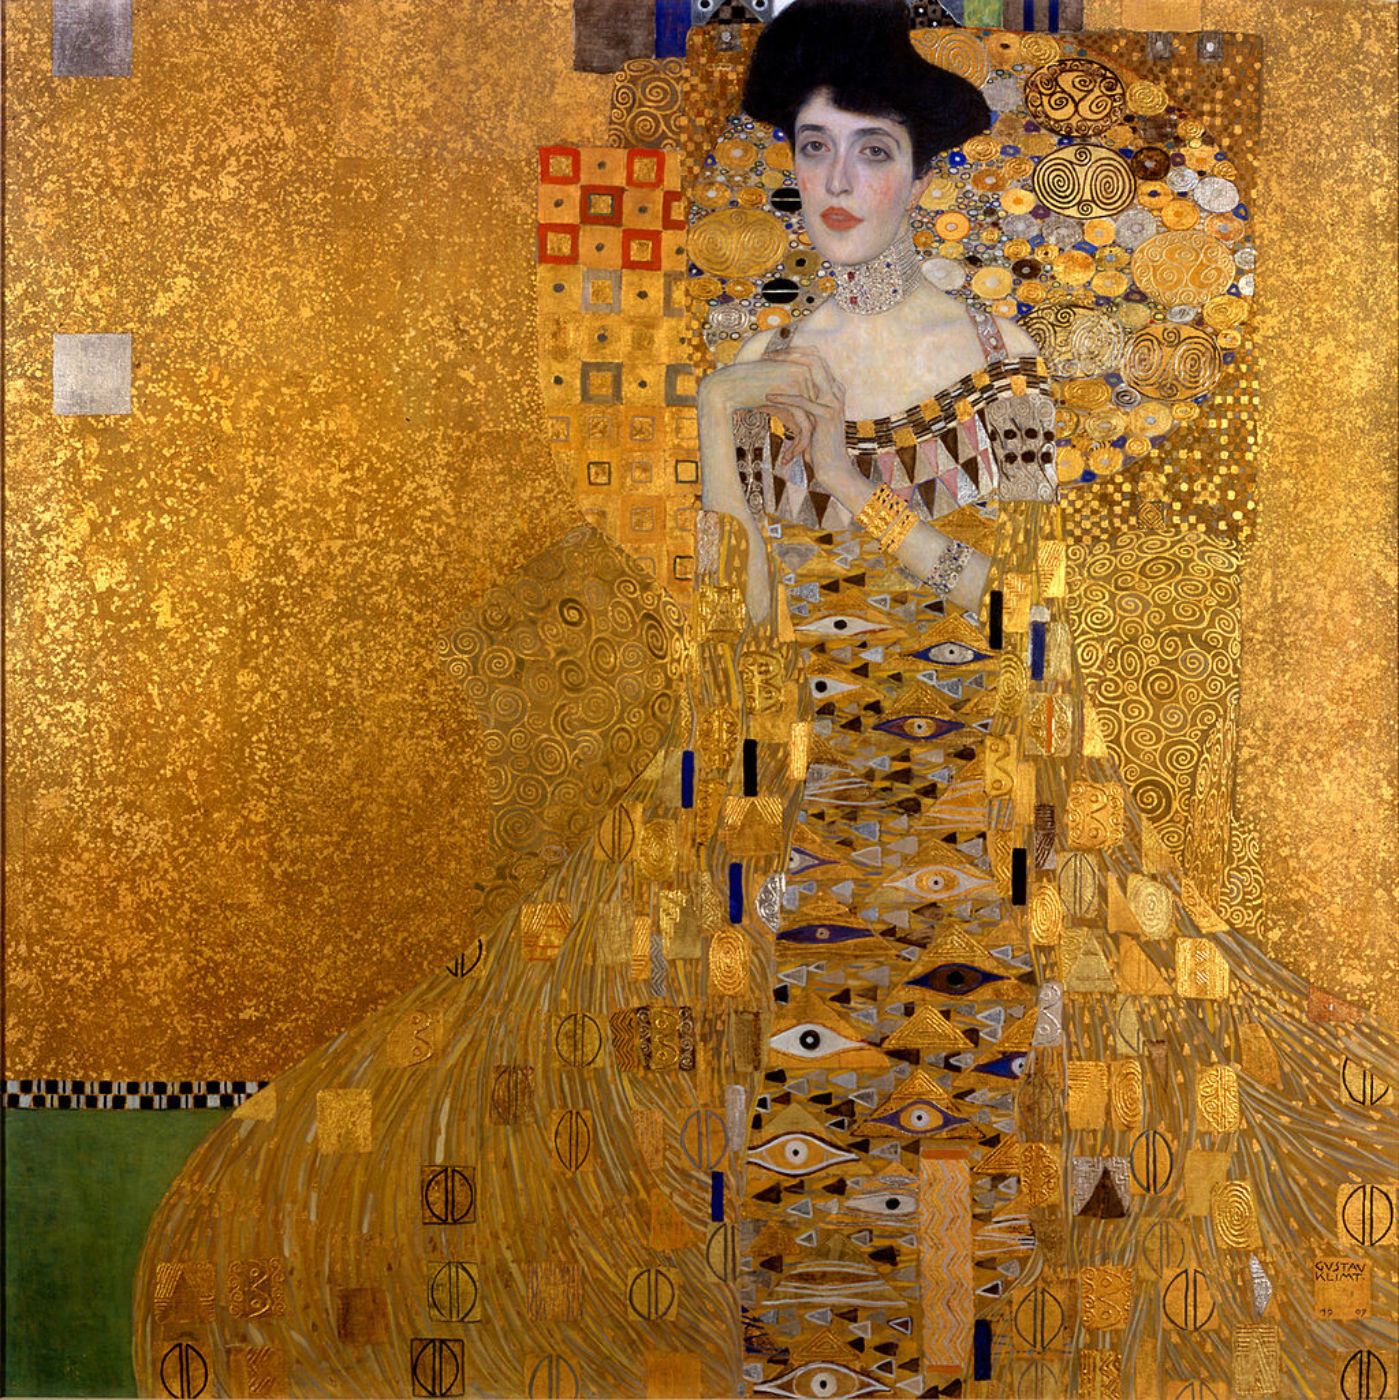 Abbildung eines Gemäldes zur Illustration. Das Portrait zeigt Adele Bloch Bauer, gemalt von Gustav Klimt. Für die Kleidung und den Hintergrund auf dem Gemälde wurden überwiegend Goldtöne verwendet.